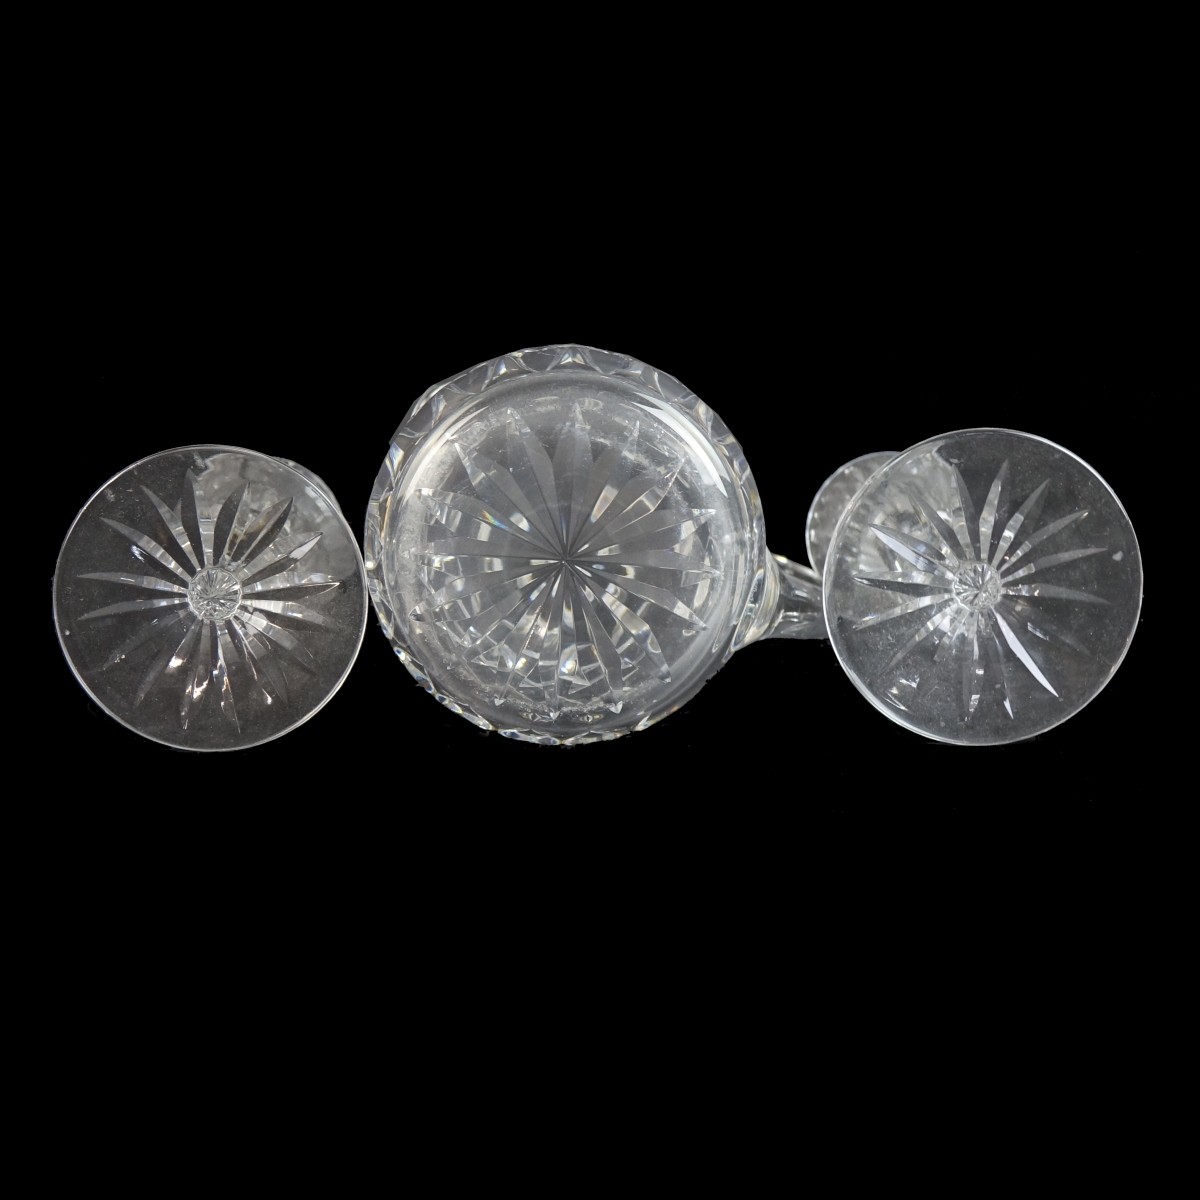 Three (3) Waterford Crystal Tableware